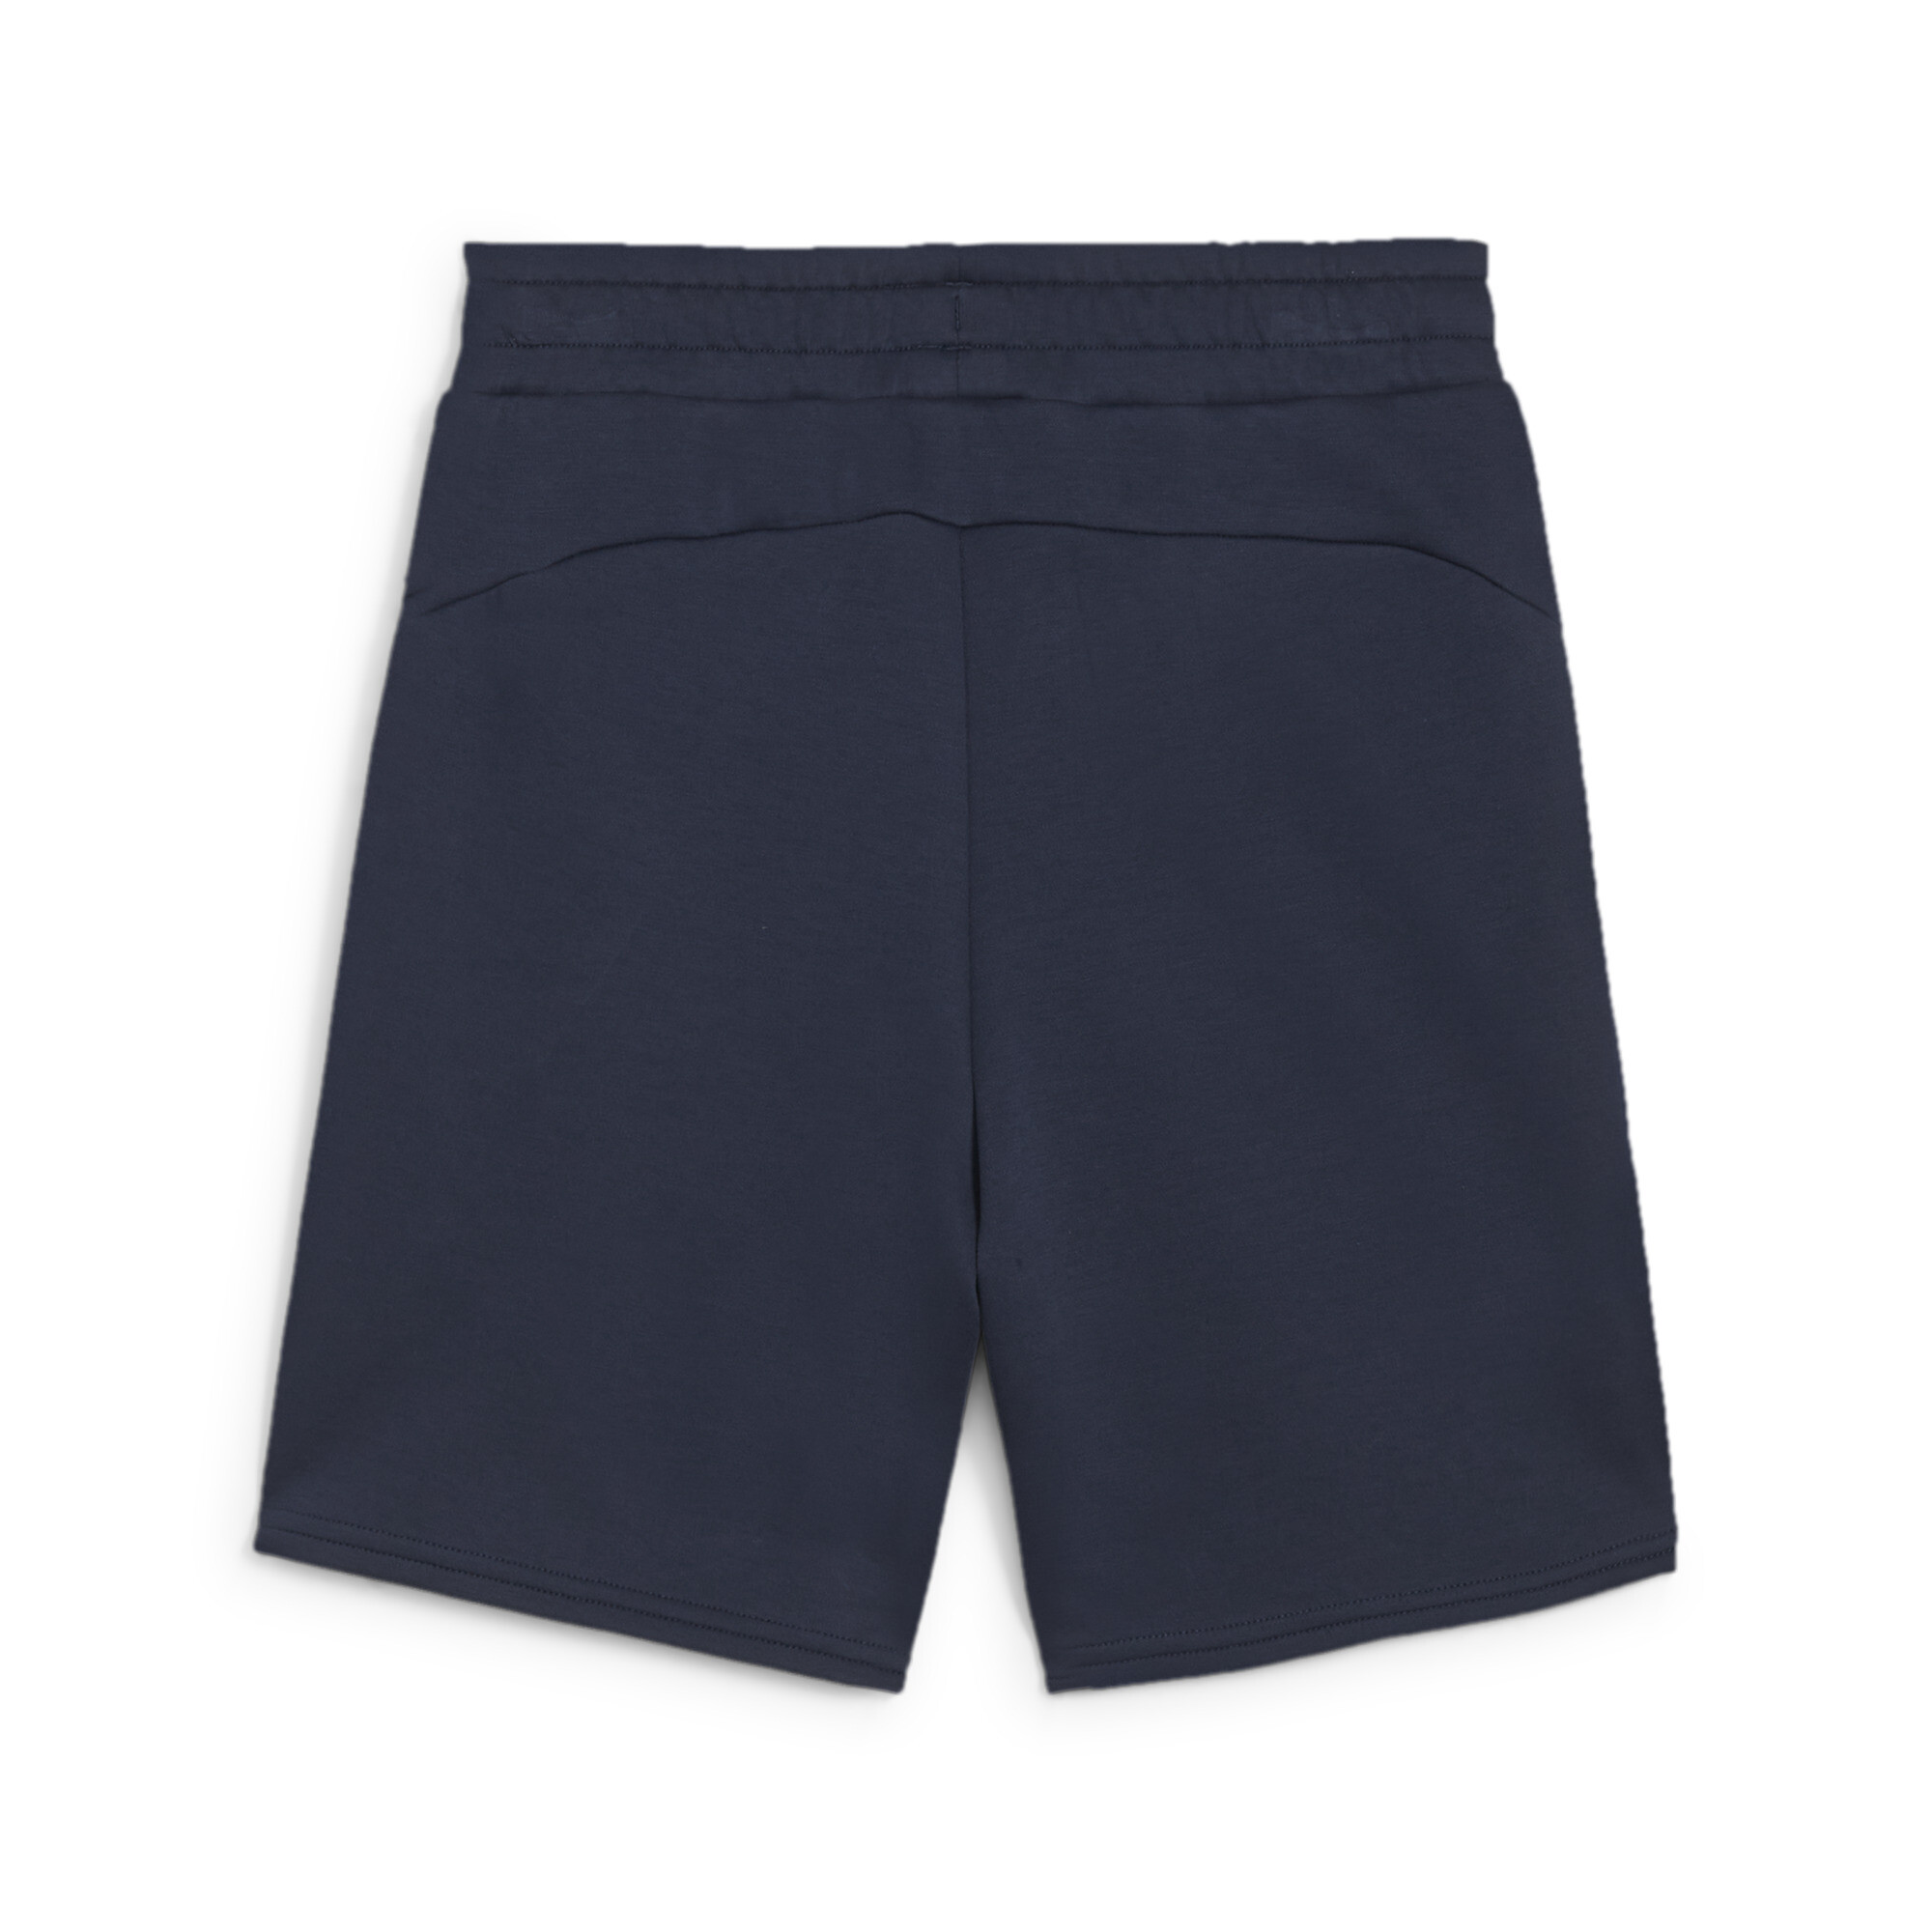 PUMA EVOSTRIPE Shorts In Blue, Size 15-16 Youth